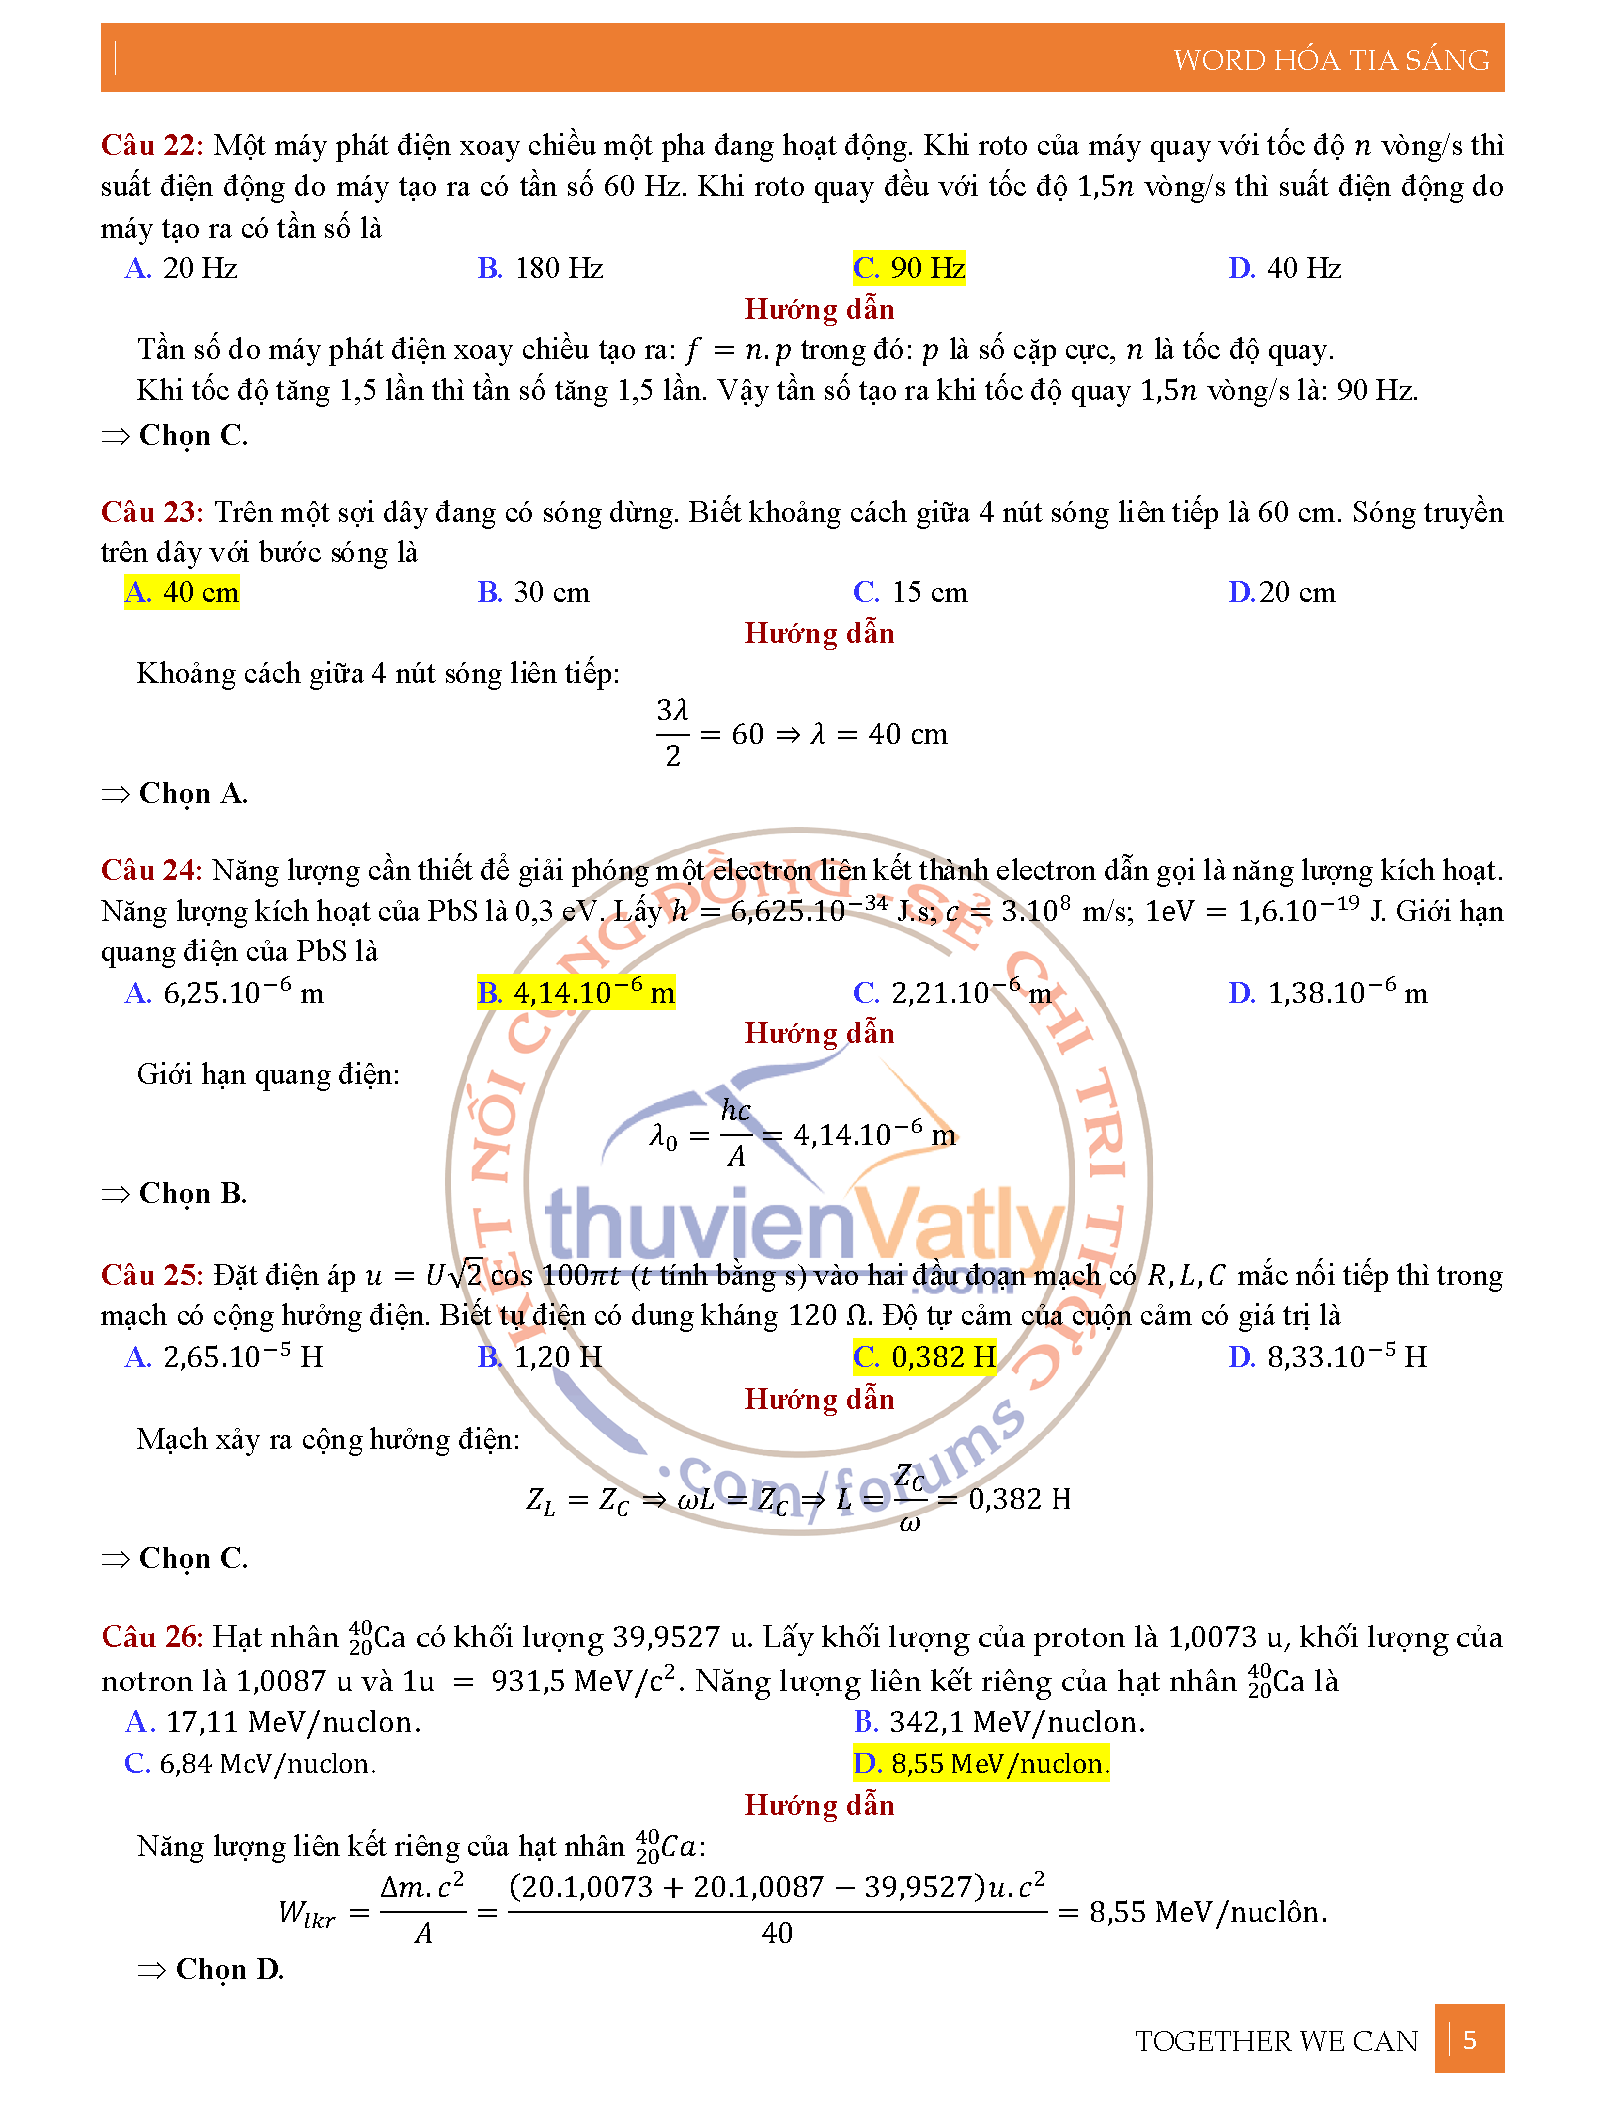 Giải chi tiết mã đề 219 môn Vật Lý đề thi TN THPT 2020 (đợt 2)